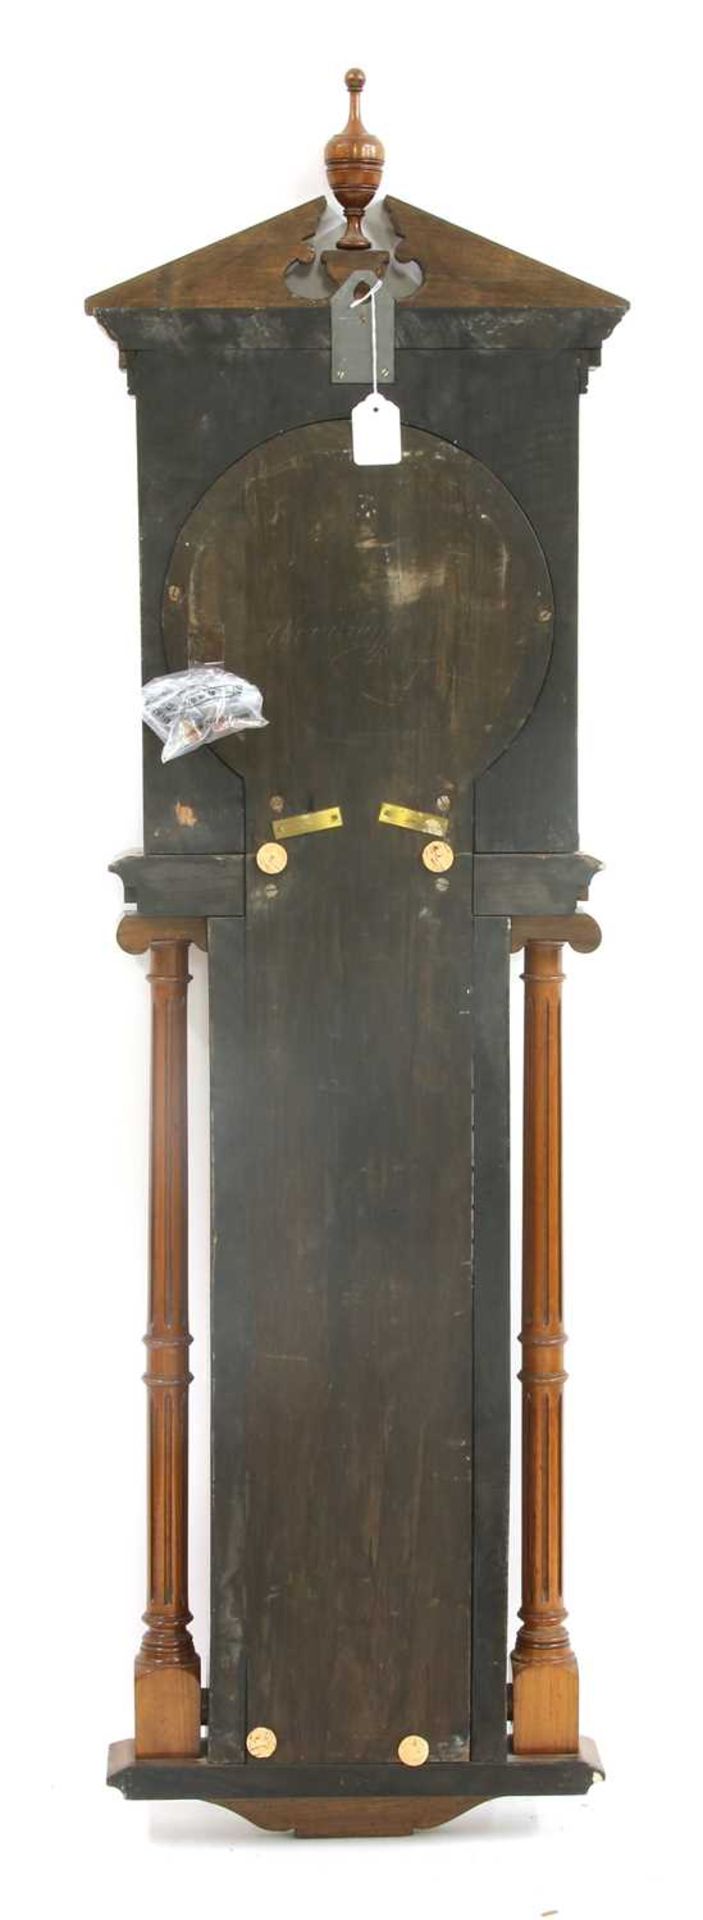 A 'Royal Polytechnic' barometer by Joseph Davis & Co, London, - Image 2 of 2